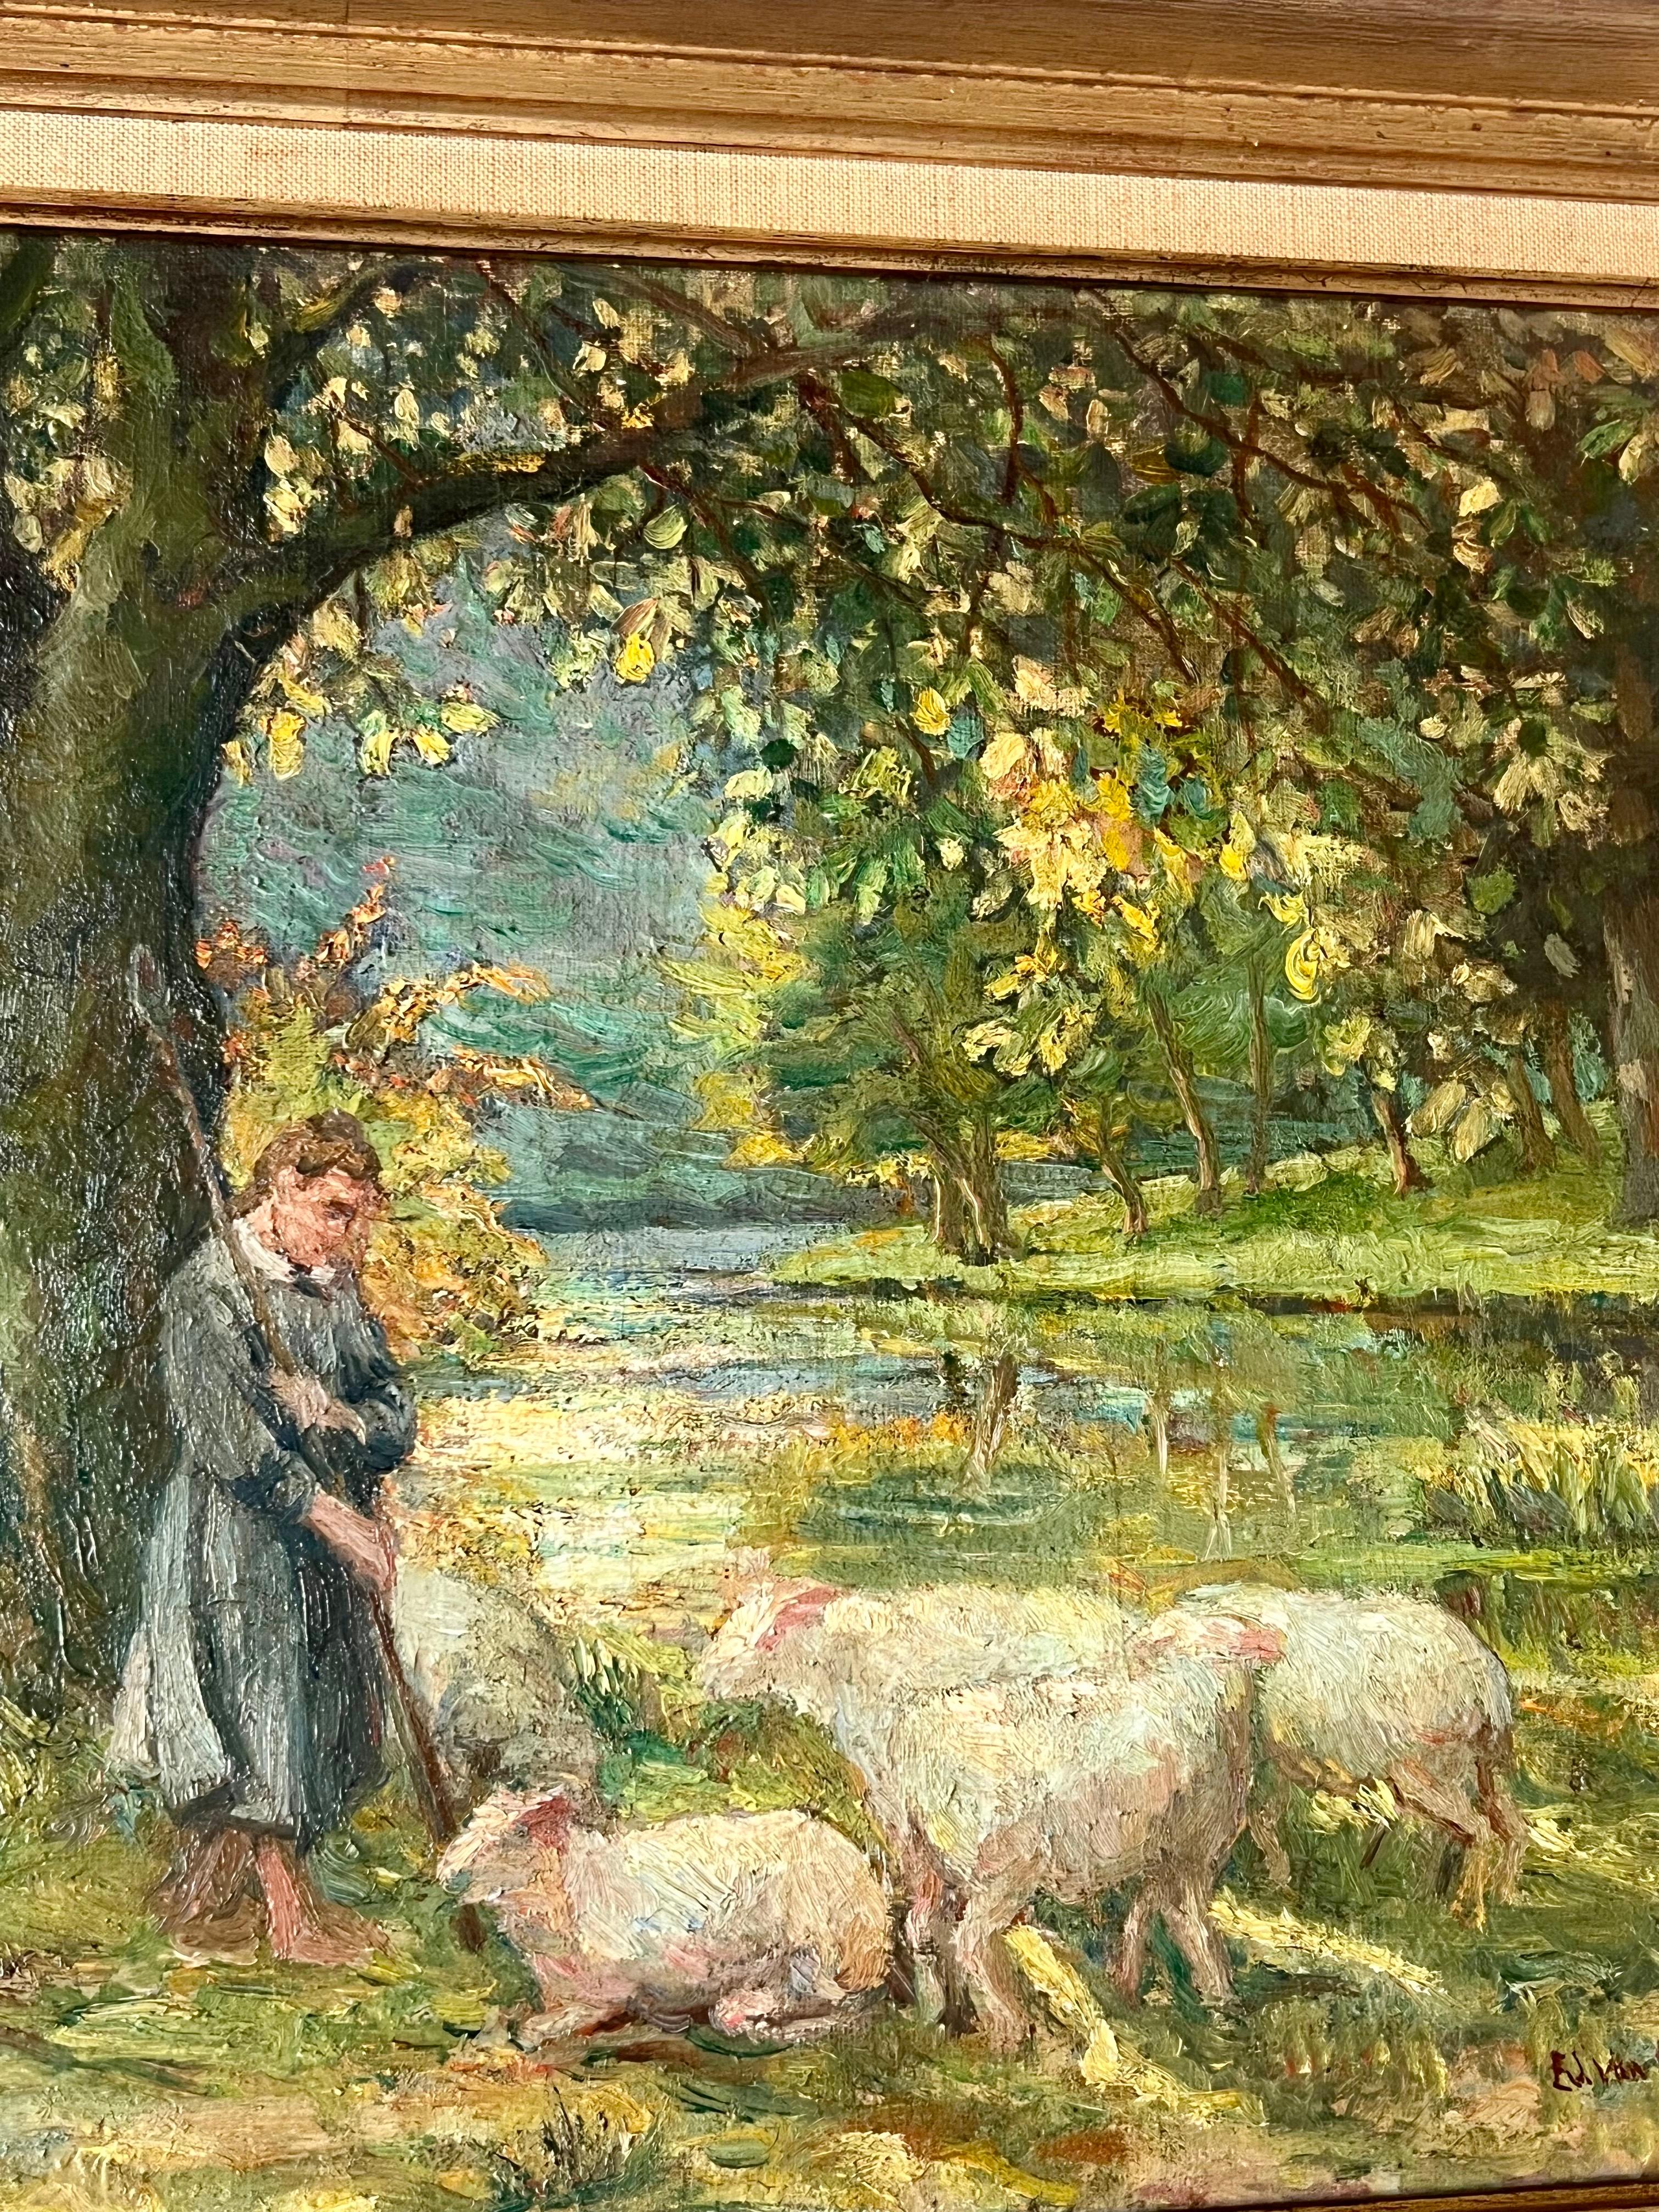 Impressionistisches Gemälde aus dem 19. Jahrhundert, das einen schönen Tag auf dem Lande festhält.

Man sieht ein junges Mädchen vor ihrer Herde in einer üppigen und schönen Landschaft stehen. Im Hintergrund fließt ein kleiner Bach durch den Wald.